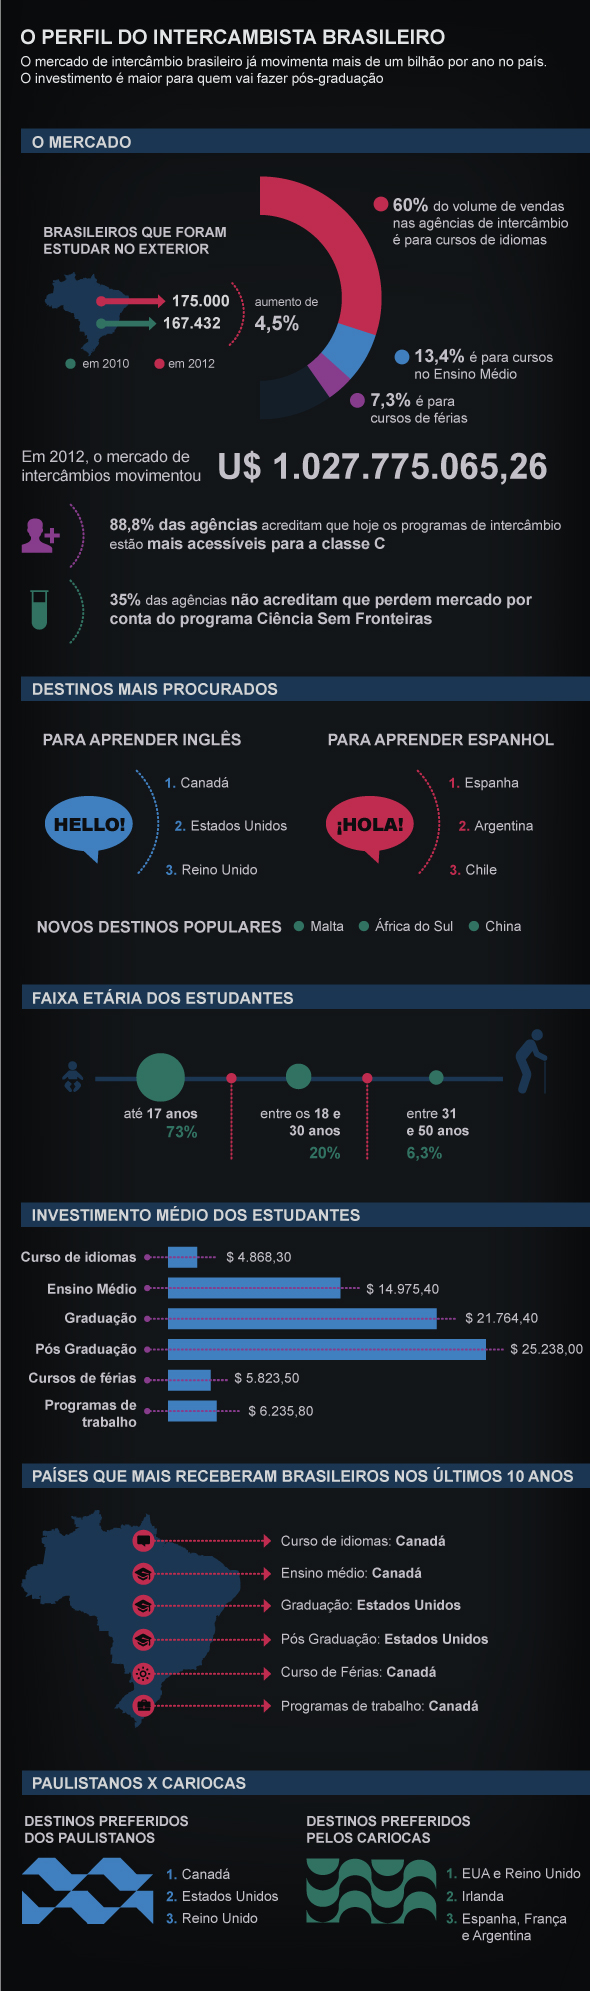 Infográfico: Beatriz Blanco/Revista Exame, intercambista brasileiro | Fonte: Belta